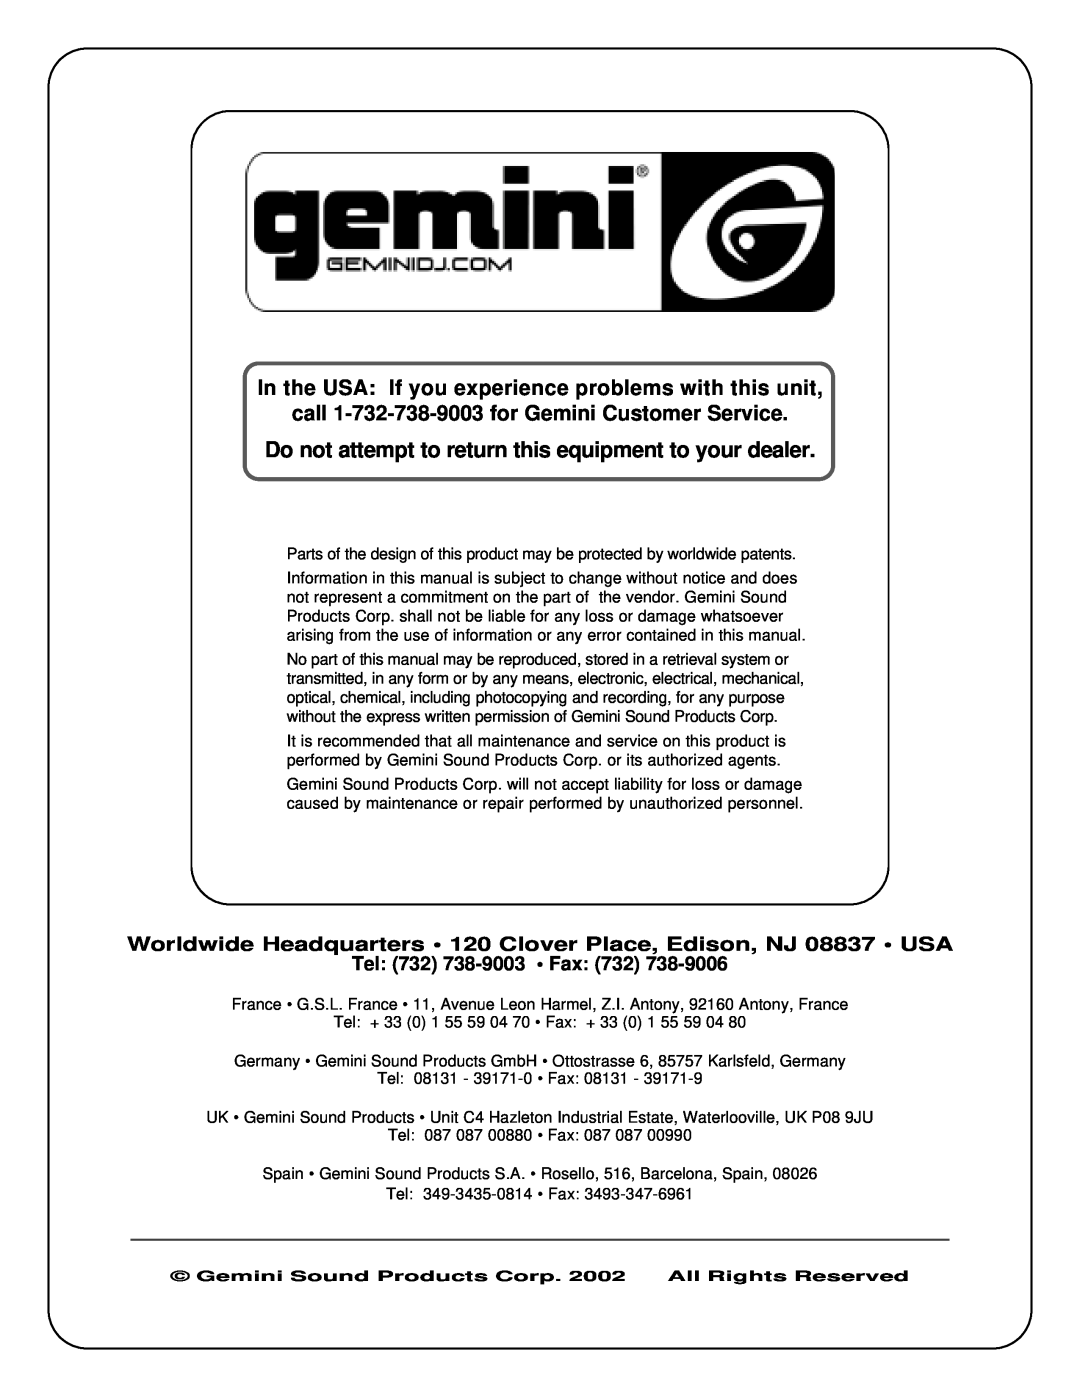 Gemini XG-3001 manual call 1-732-738-9003for Gemini Customer Service, Tel 732 738-9003 Fax 